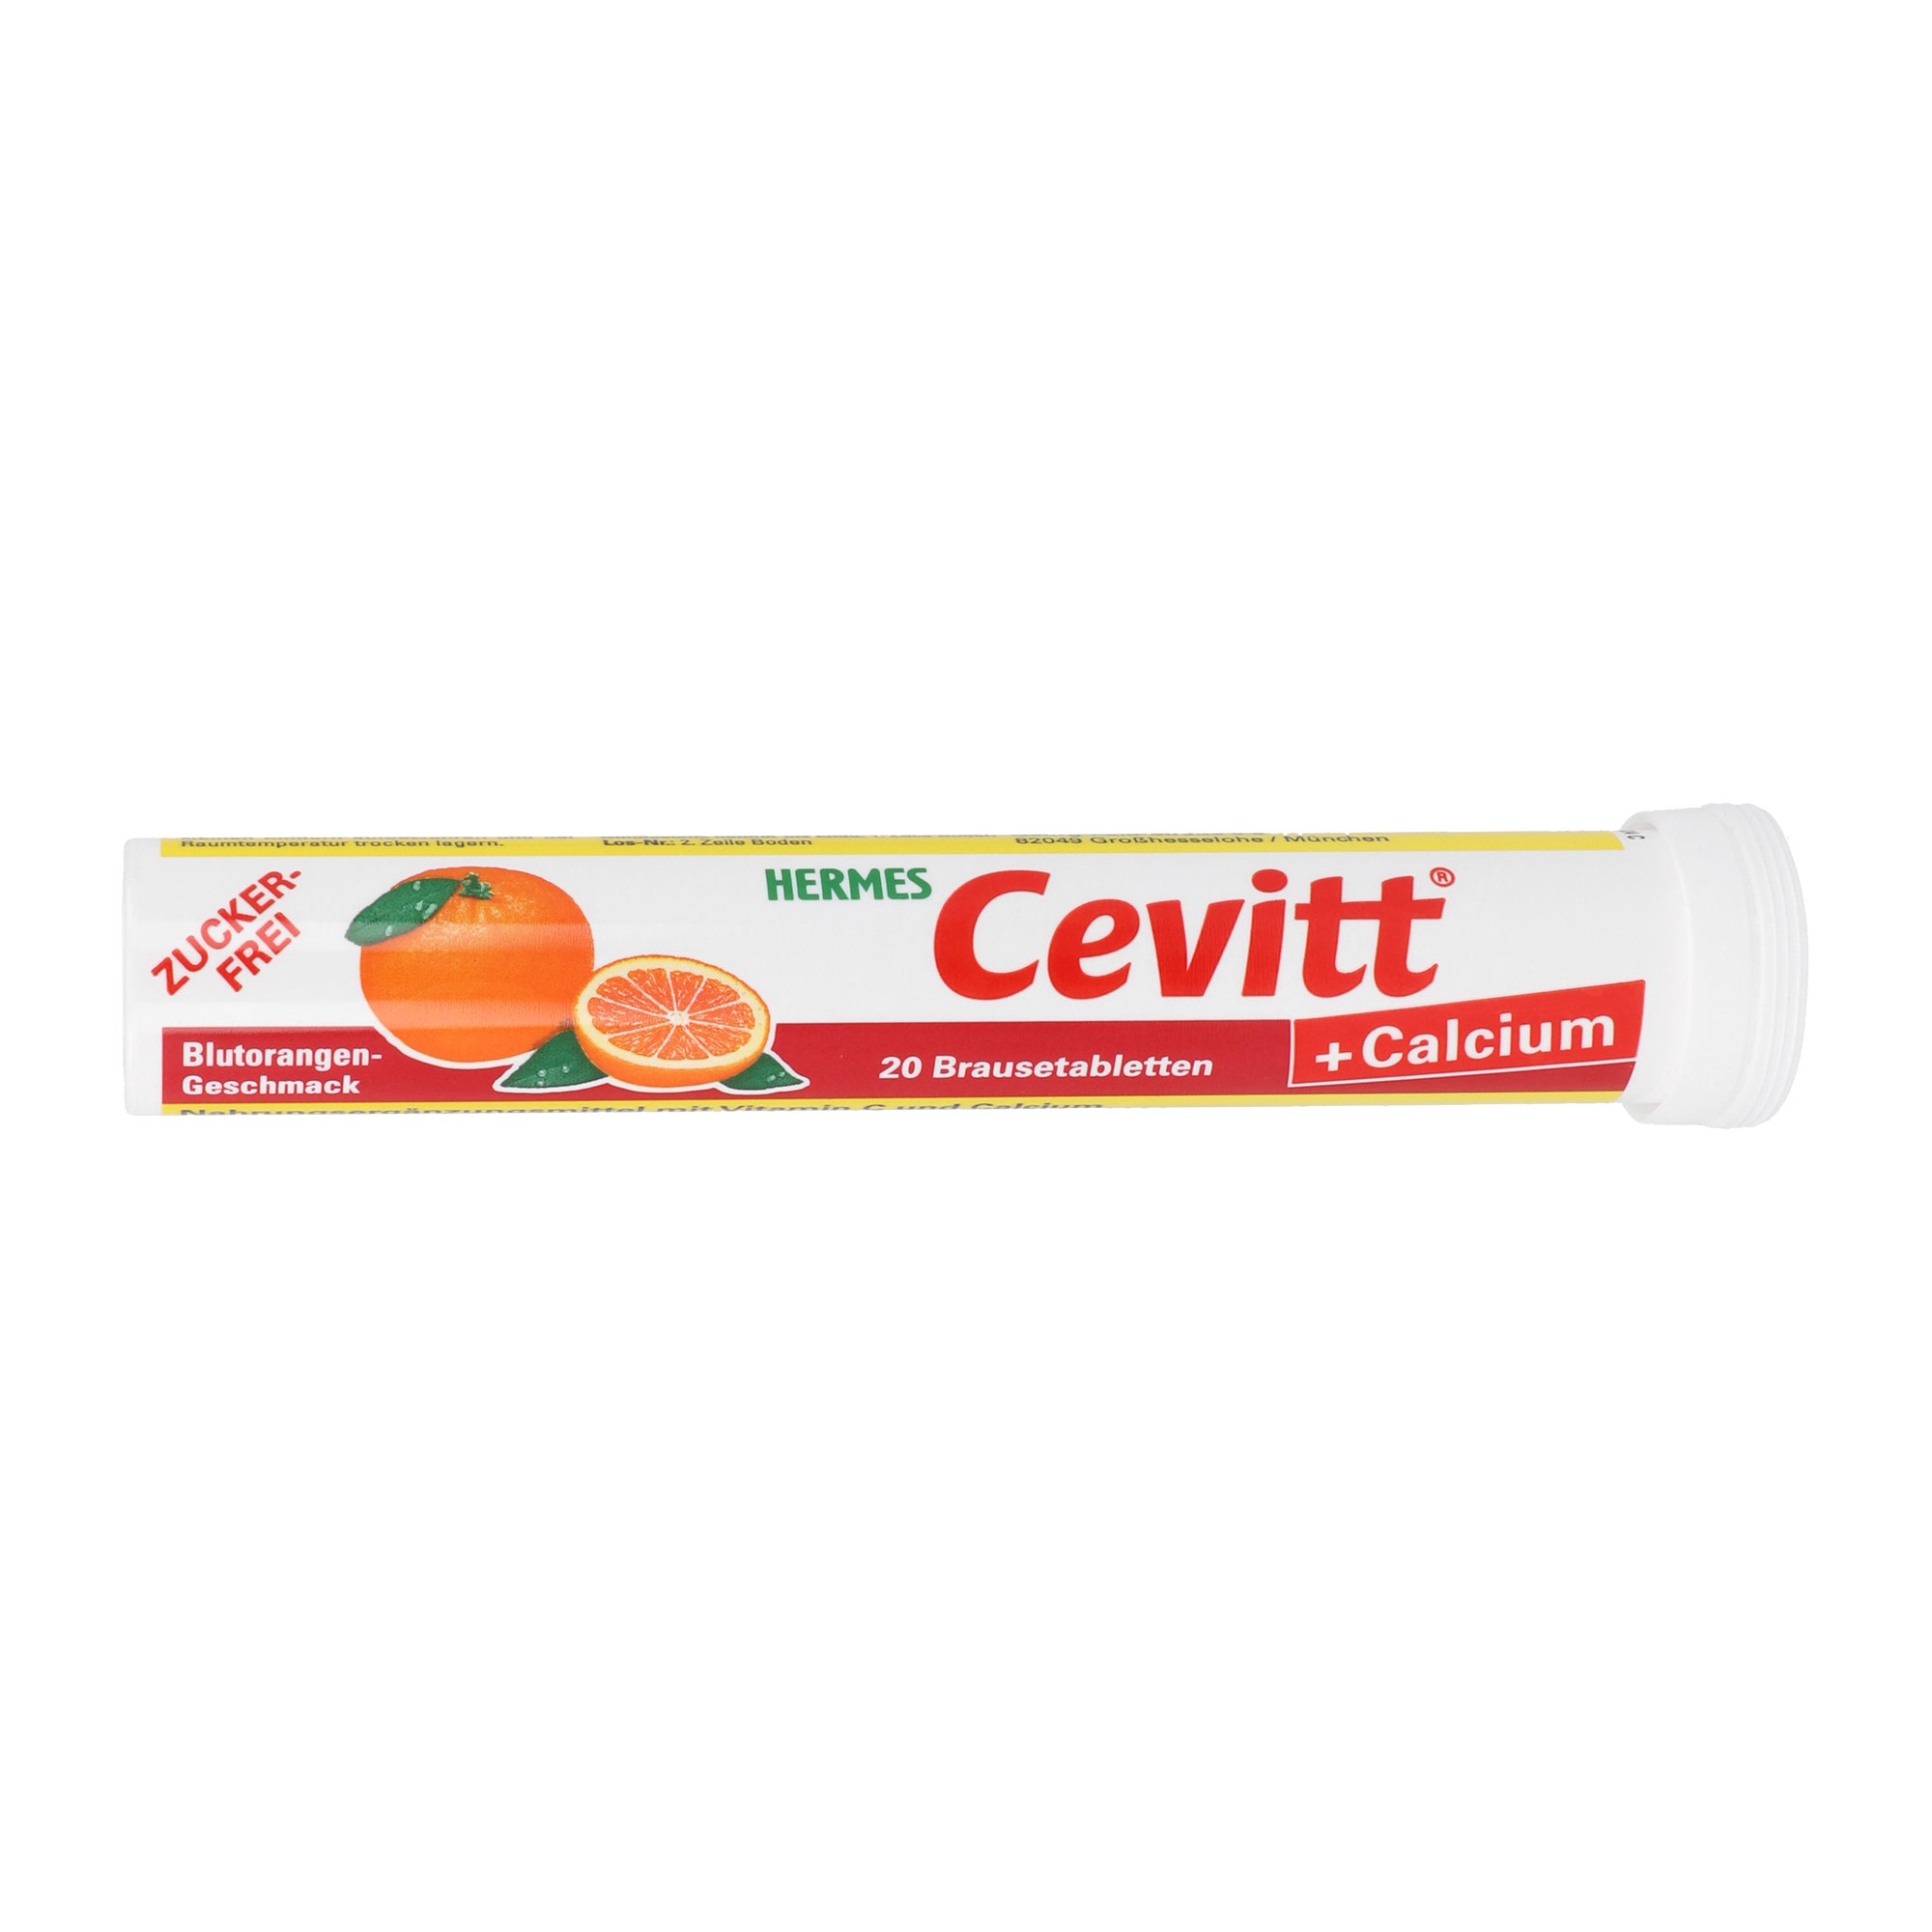 Hermes Cevitt + Calcium mit Blutorangen-Geschmack - zur täglichen Versorgung mit Vitamin C und Calcium.